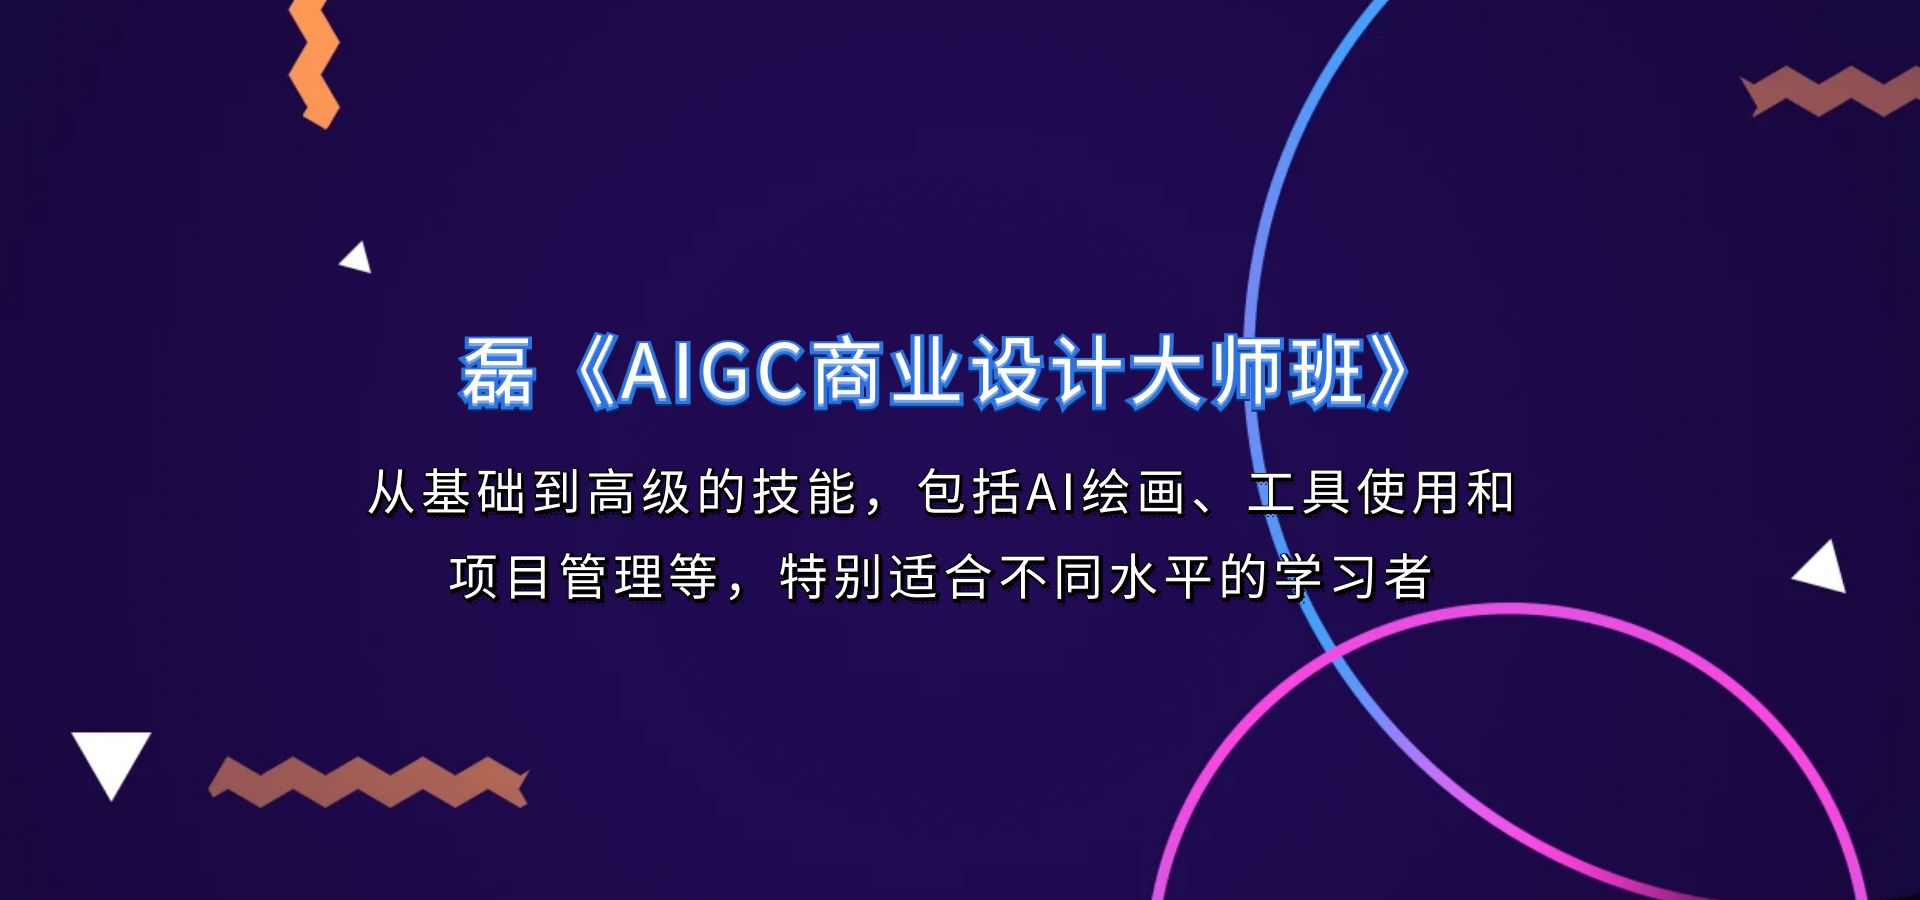 磊《AIGC商业设计大师班》